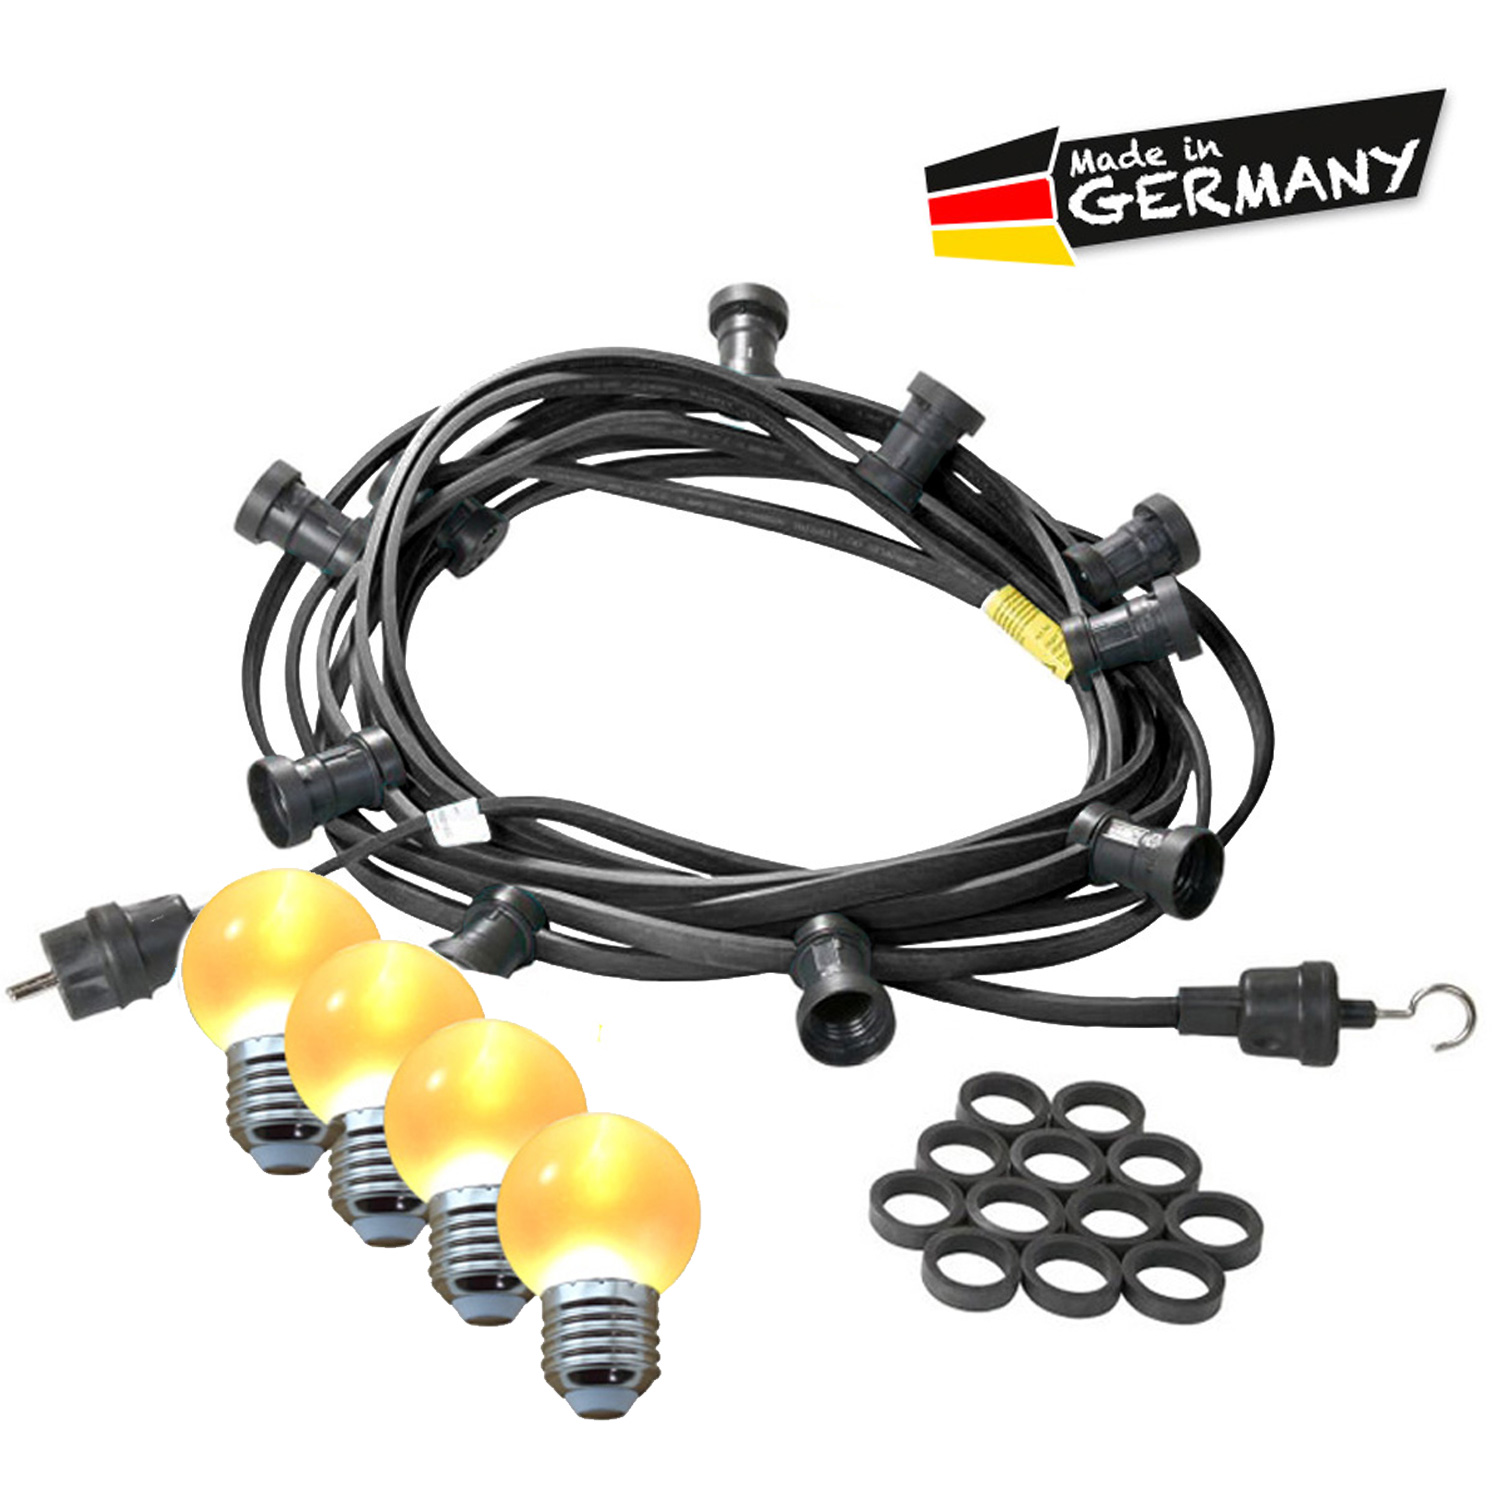 Illu-/Partylichterkette 20m - Außenlichterkette - Made in Germany - 20 x ultra-warmweiße LED Kugeln